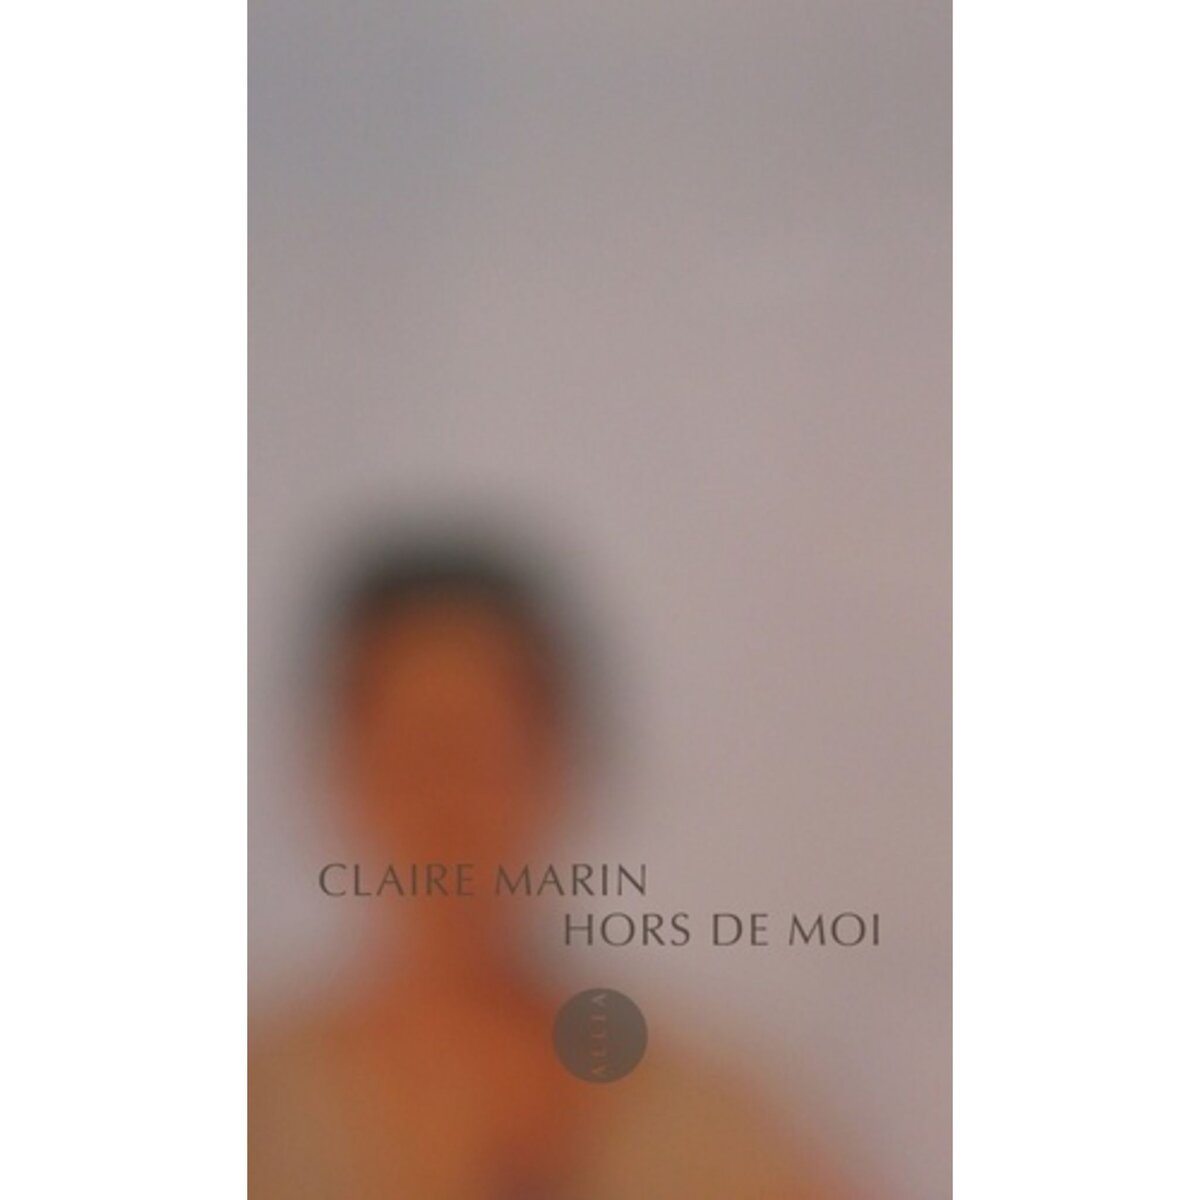  HORS DE MOI, Marin Claire